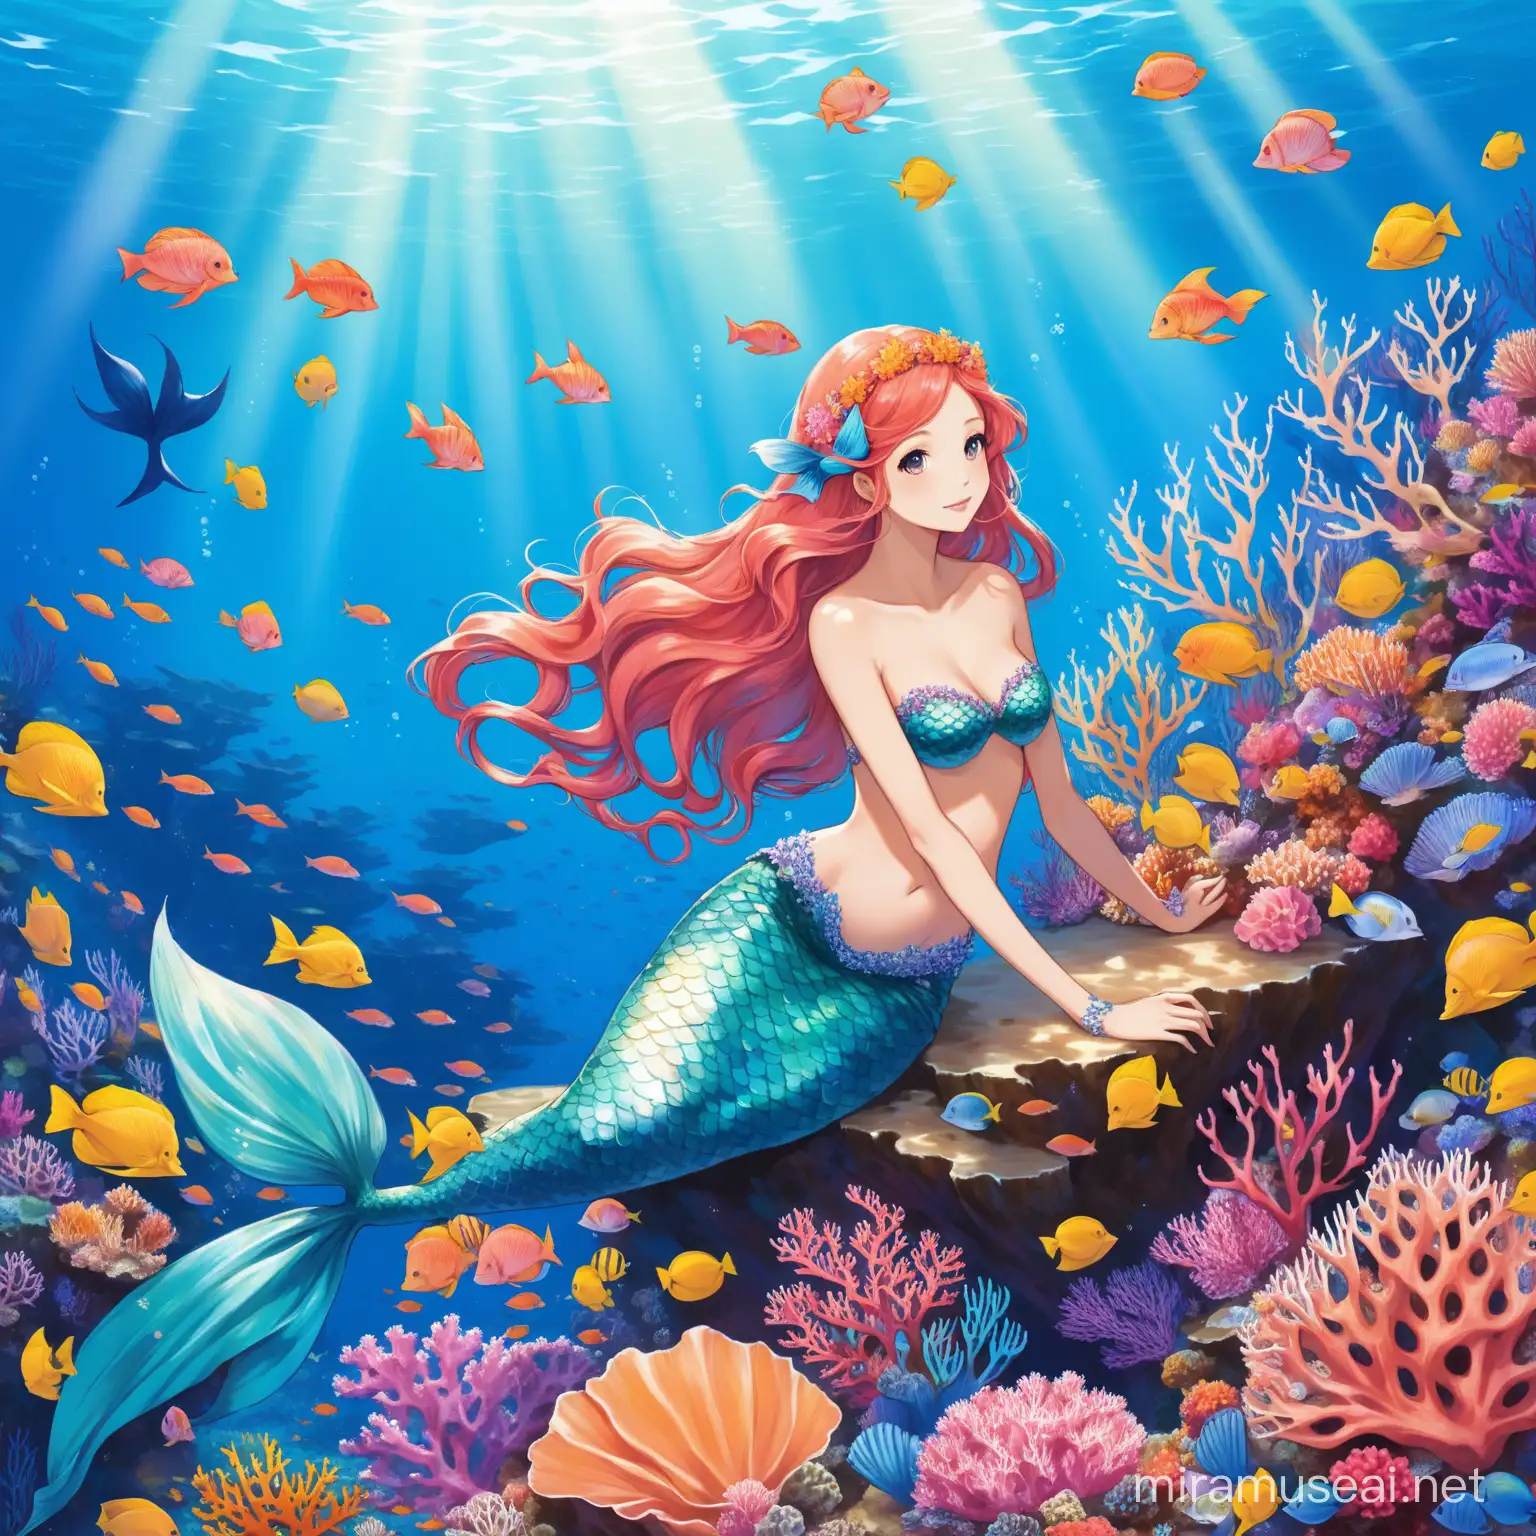 Mermaid in a coral reef